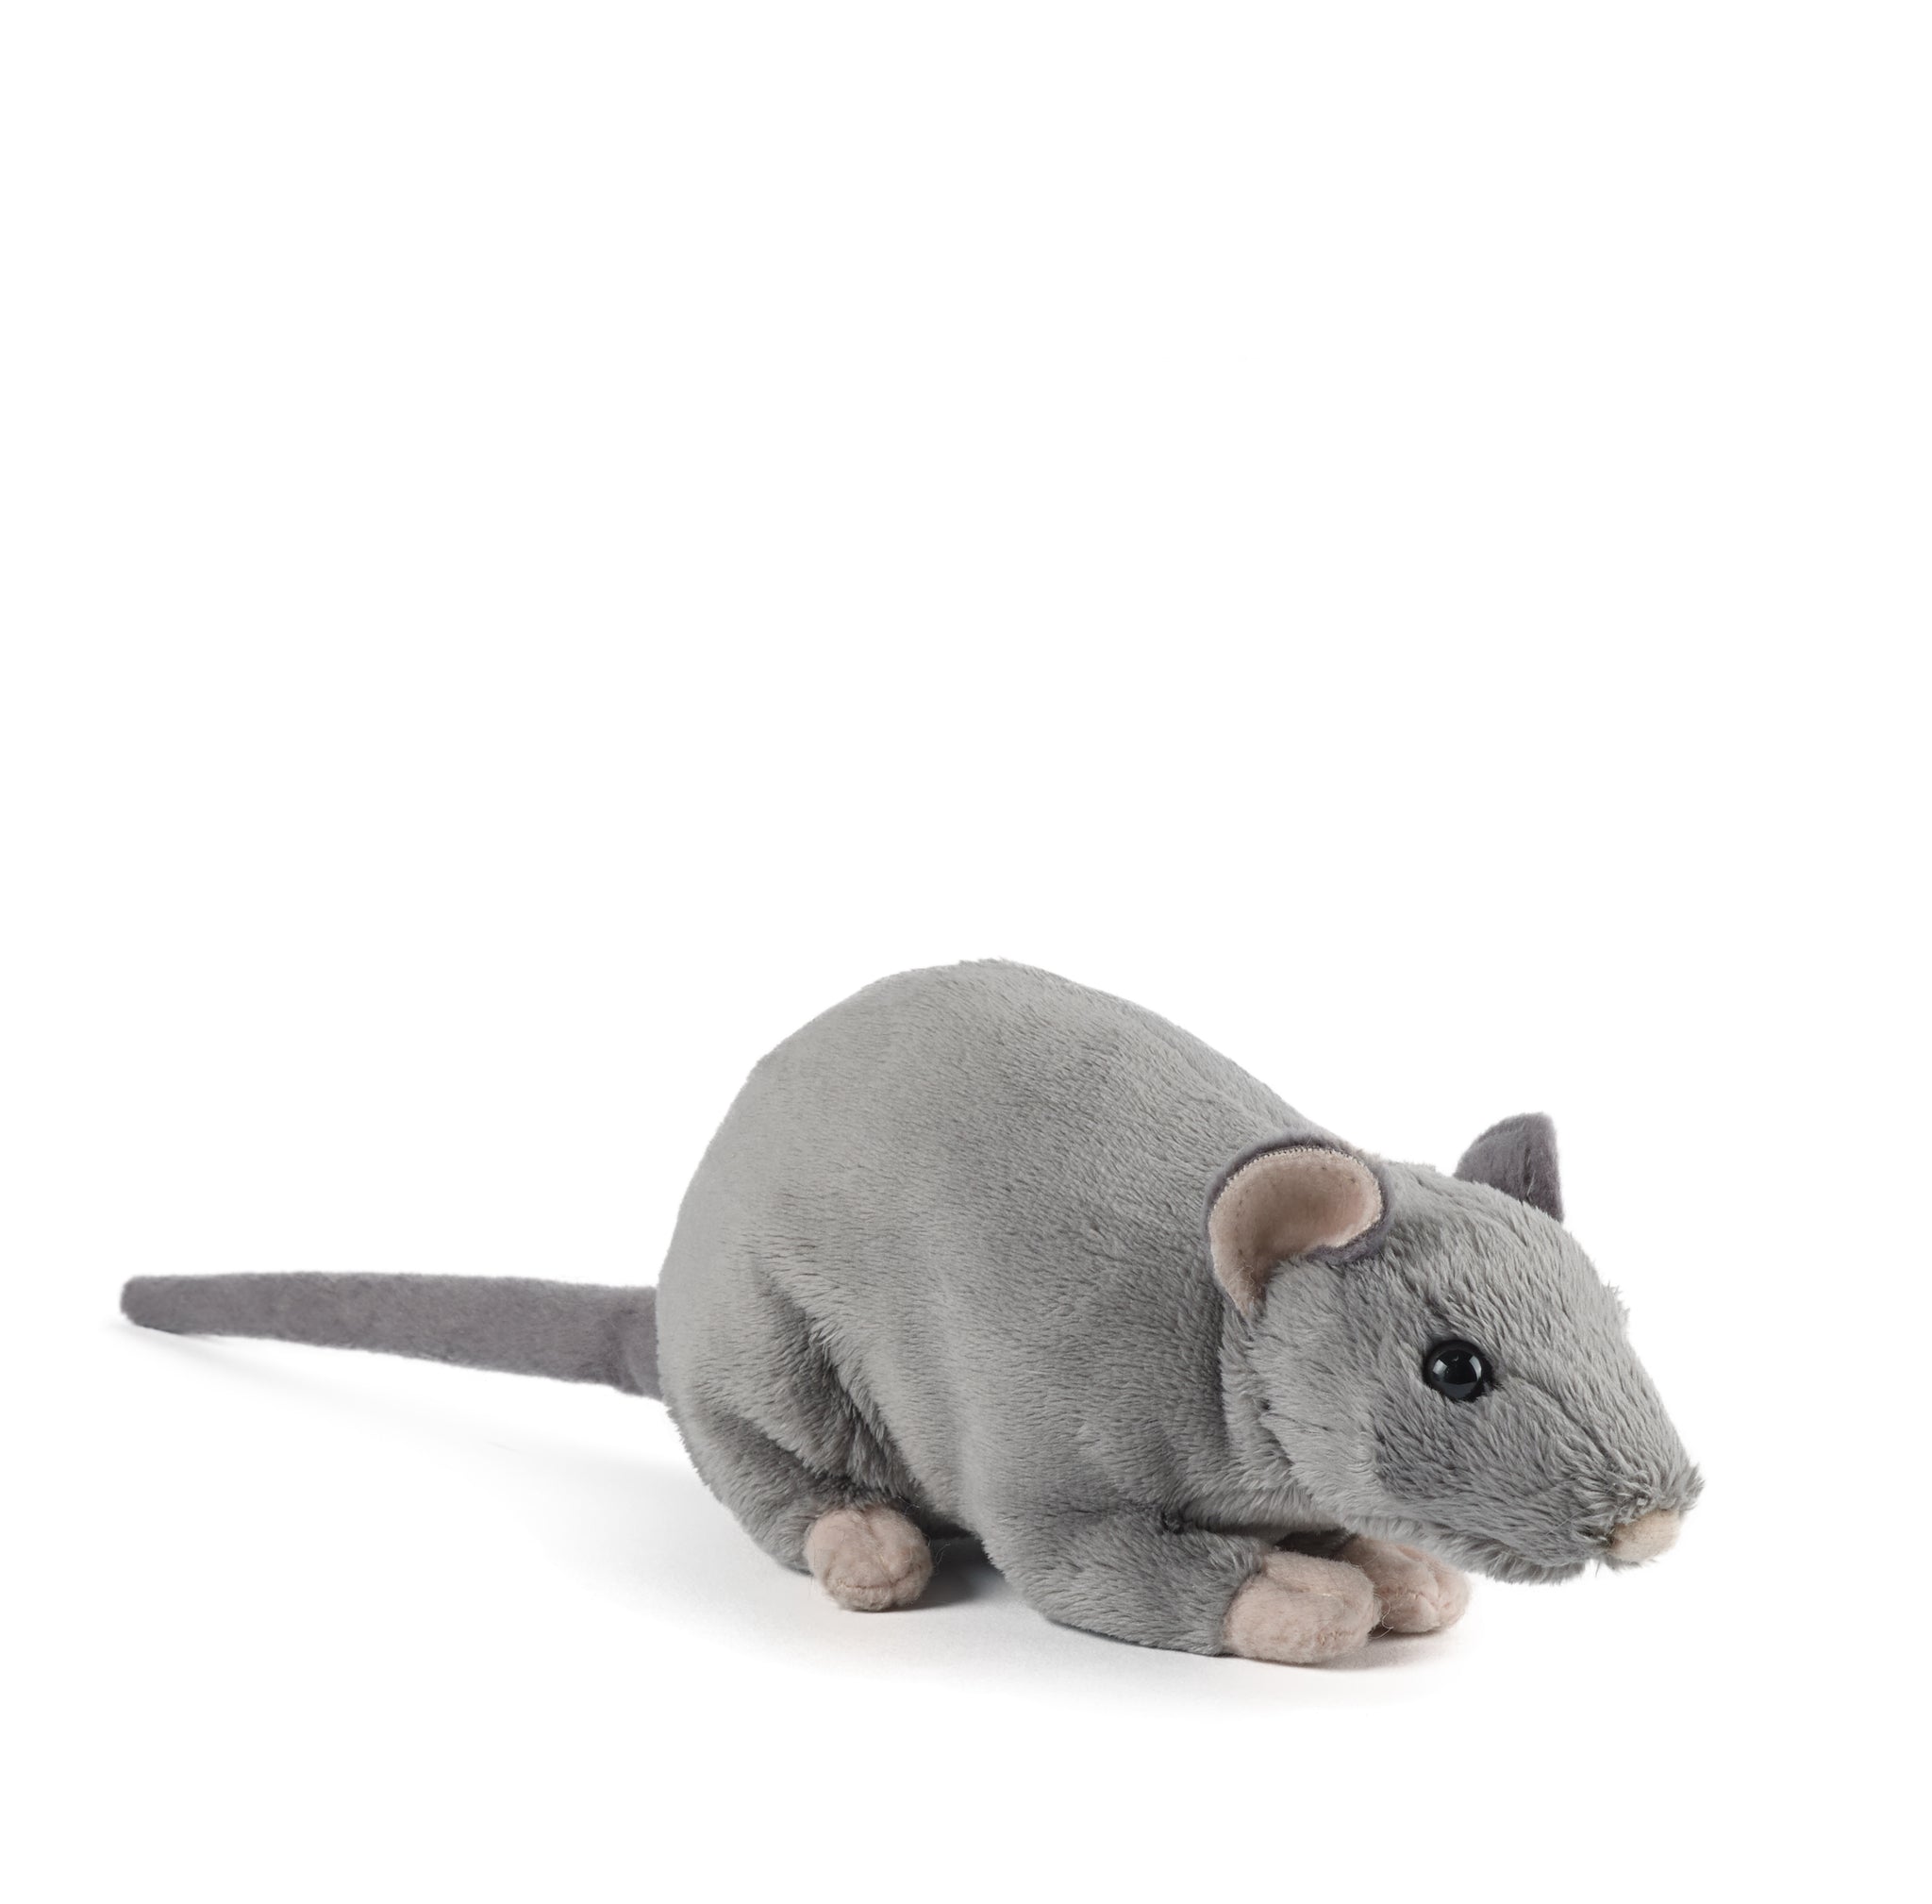 Rat with Squeak